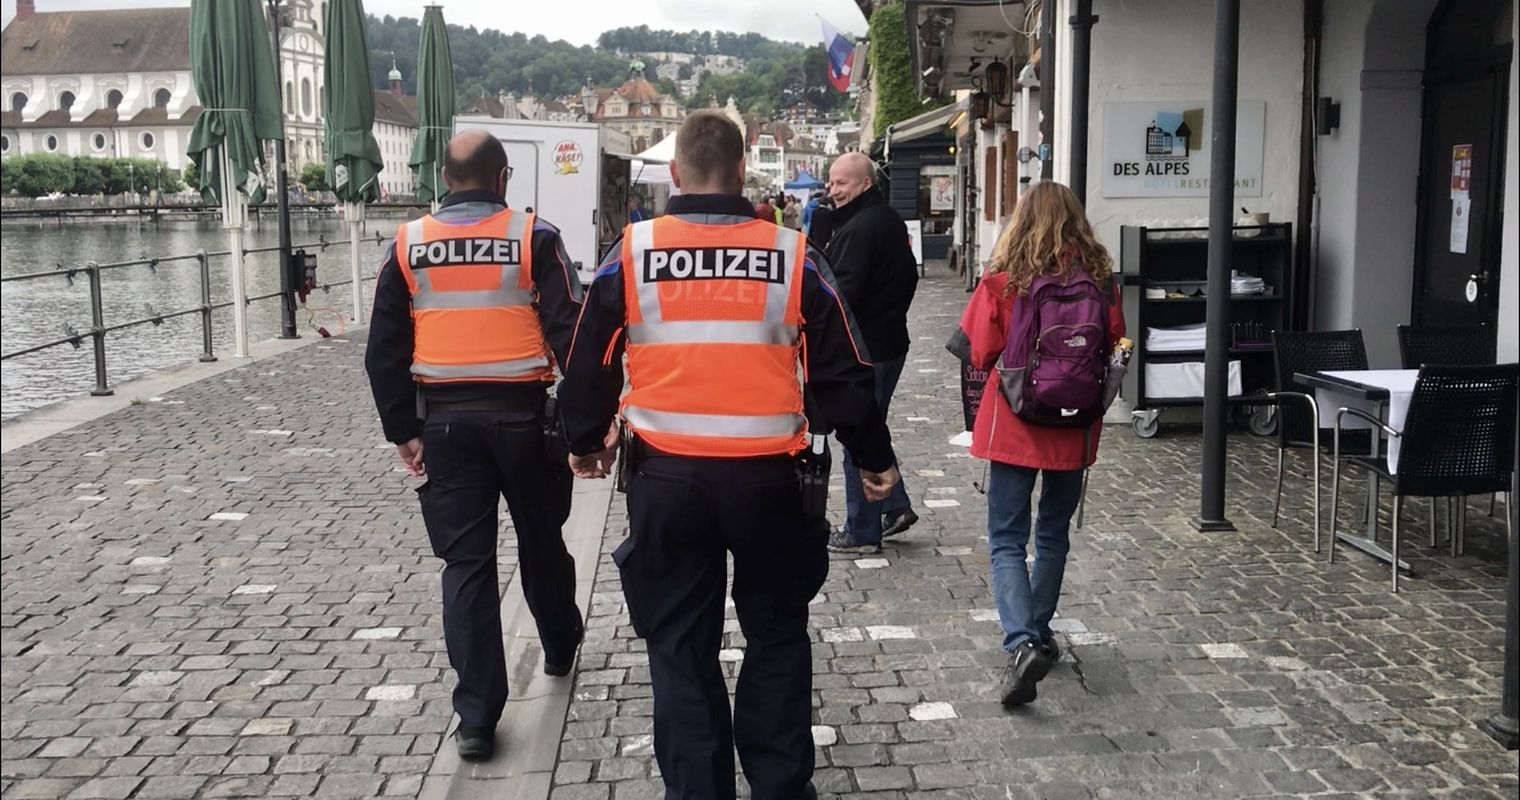 Luzerner Polizei: Parteien fordern Nähe und schnelle Reaktion